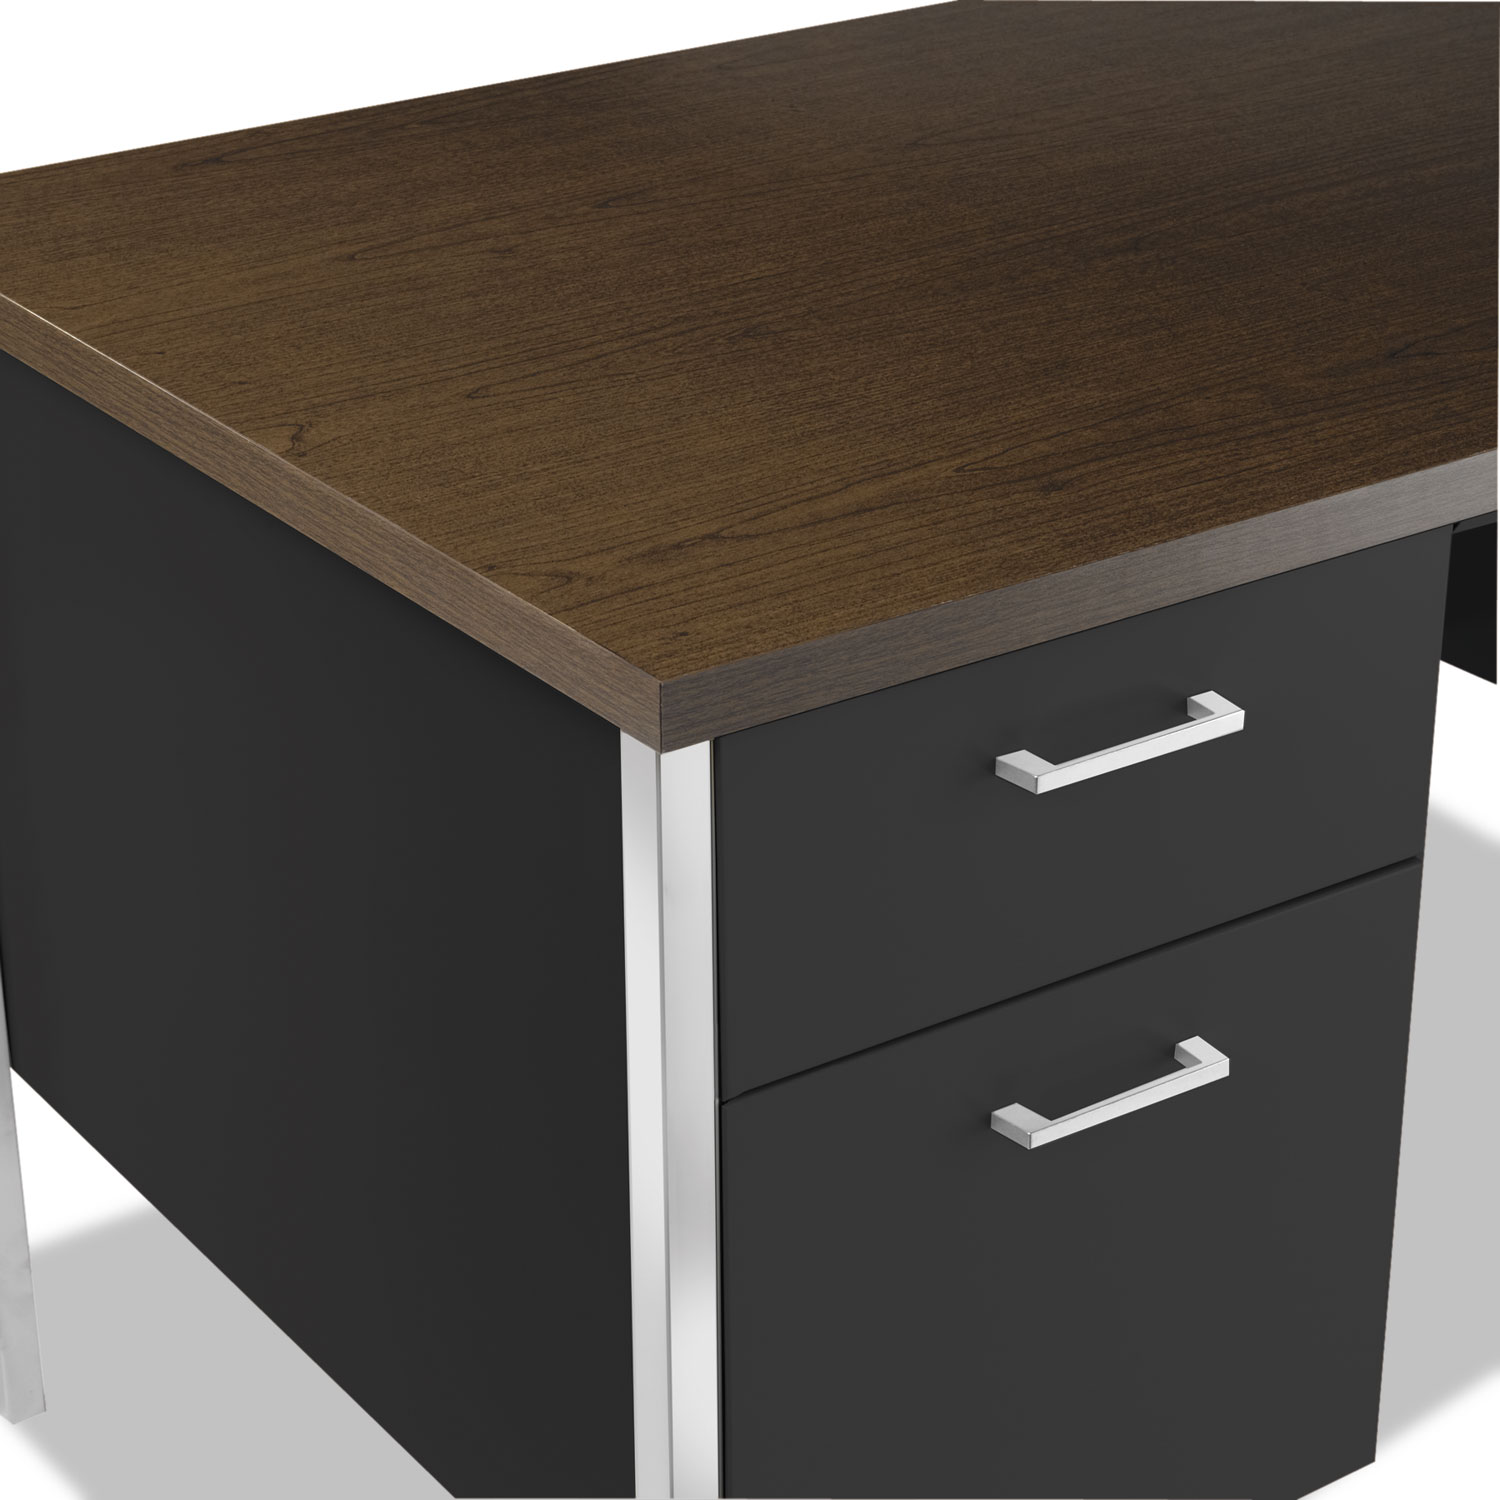 Double Pedestal Steel Desk, Metal Desk, 60w x 30d x 29-1/2h, Walnut/Black